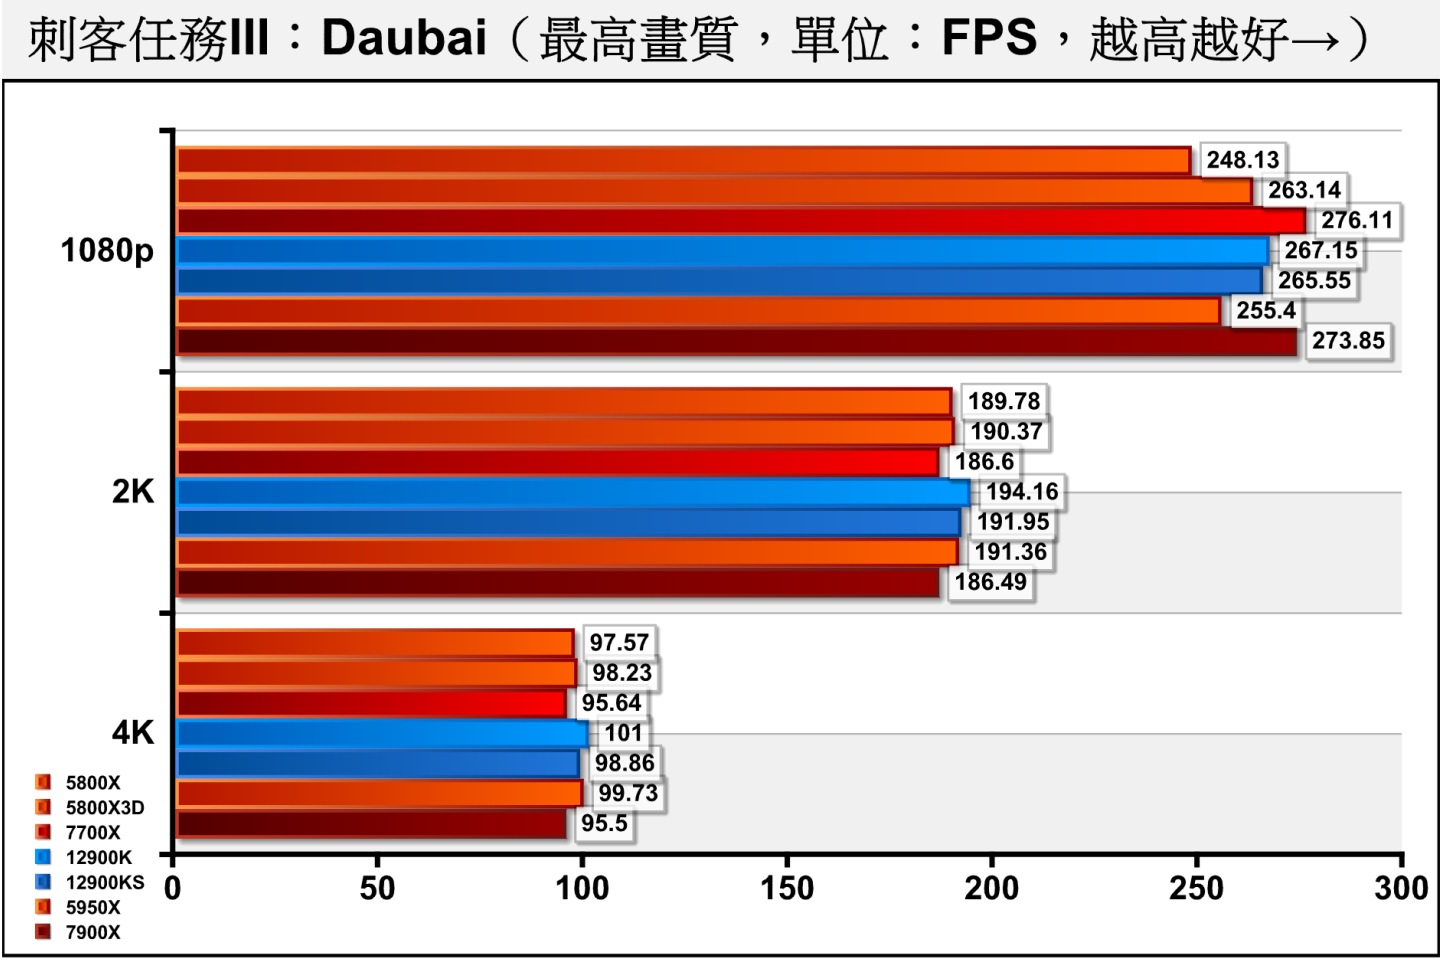 《刺客任務III》Dubai（杜拜）測試項目包含多種場景與NPC角色，整體負擔較低，但仍可看出效能瓶頸主要落在處理器。Ryzen 7000系列處理器的表現相當出色，也Ryzen 7 5800X3D與拉開差距。